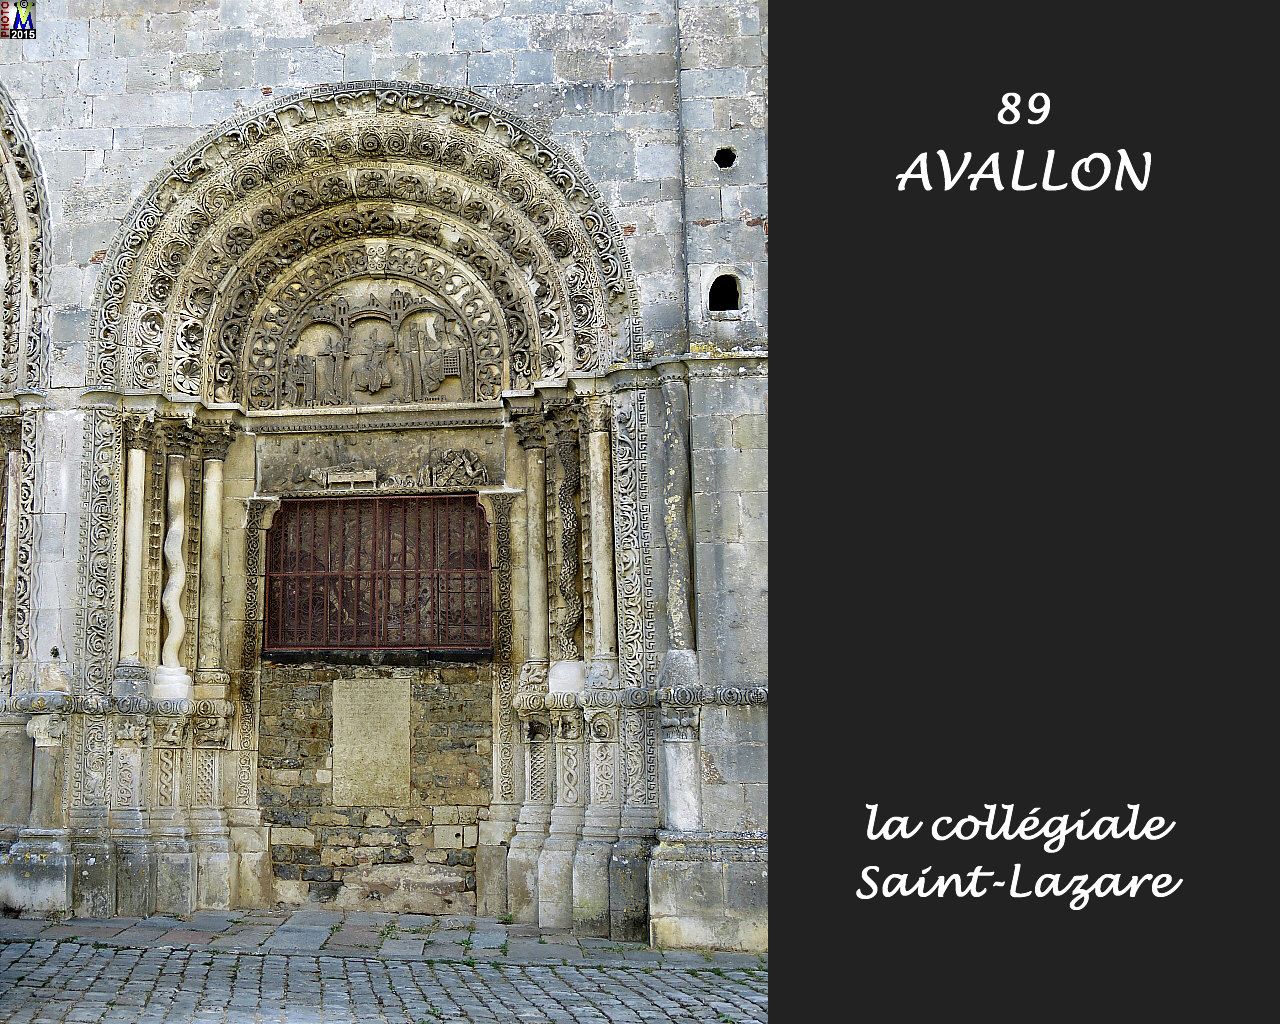 89AVALLON-collegiale_140.jpg